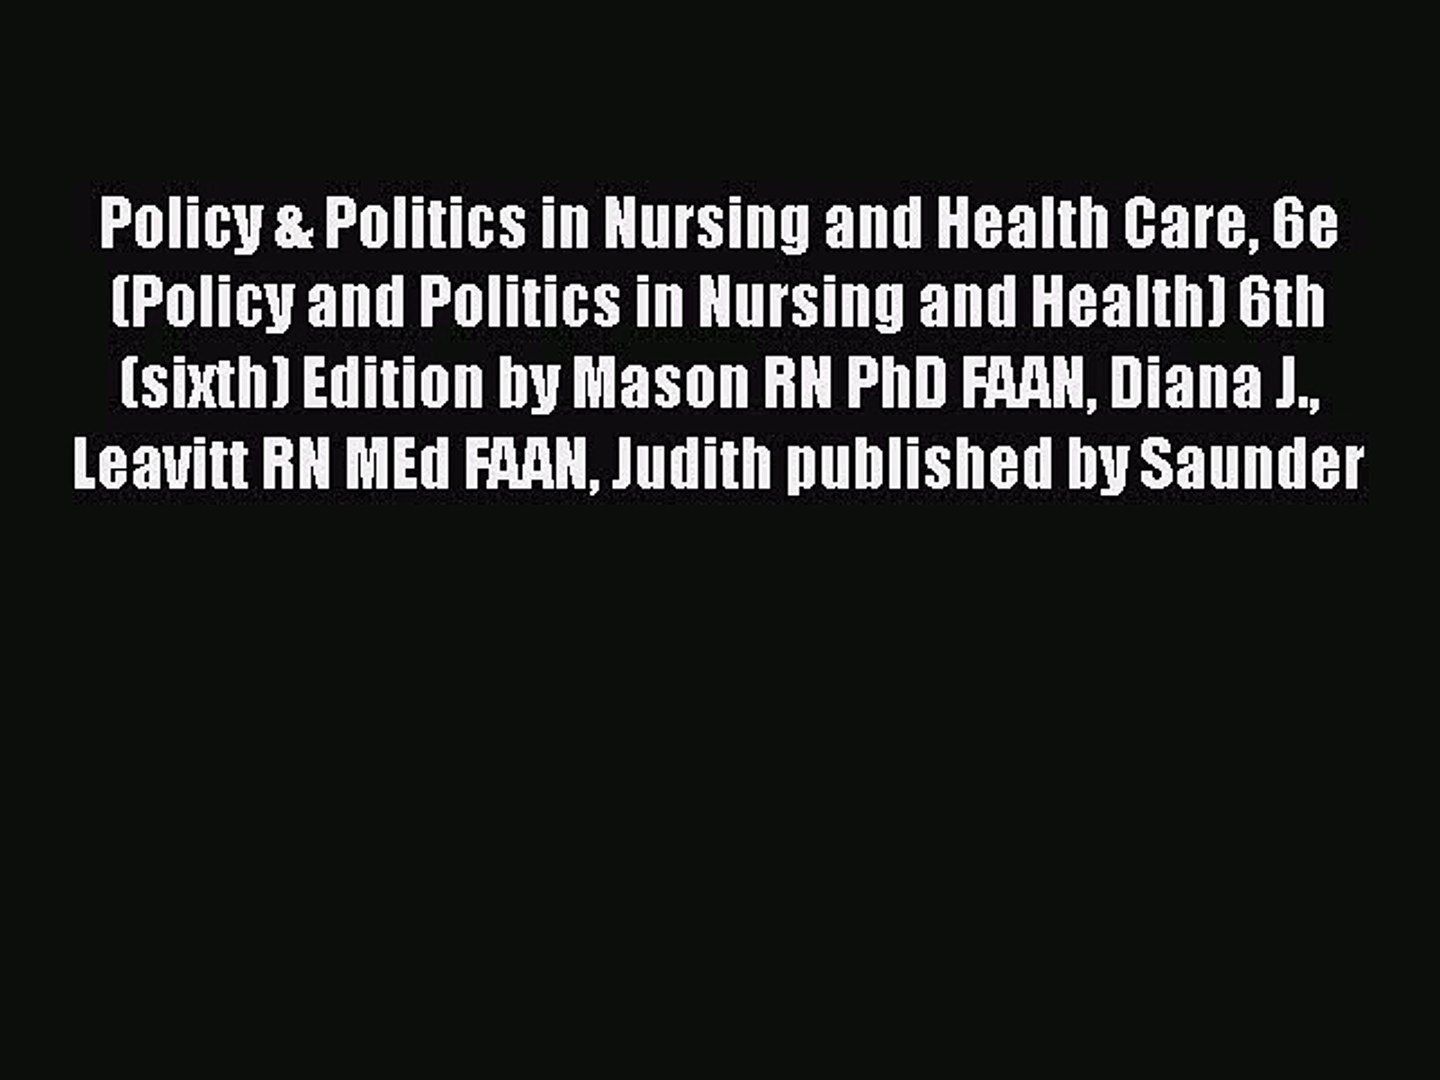 Policy & Politics in Nursing and Health Care 6e (Policy and Politics in Nursing and Health)